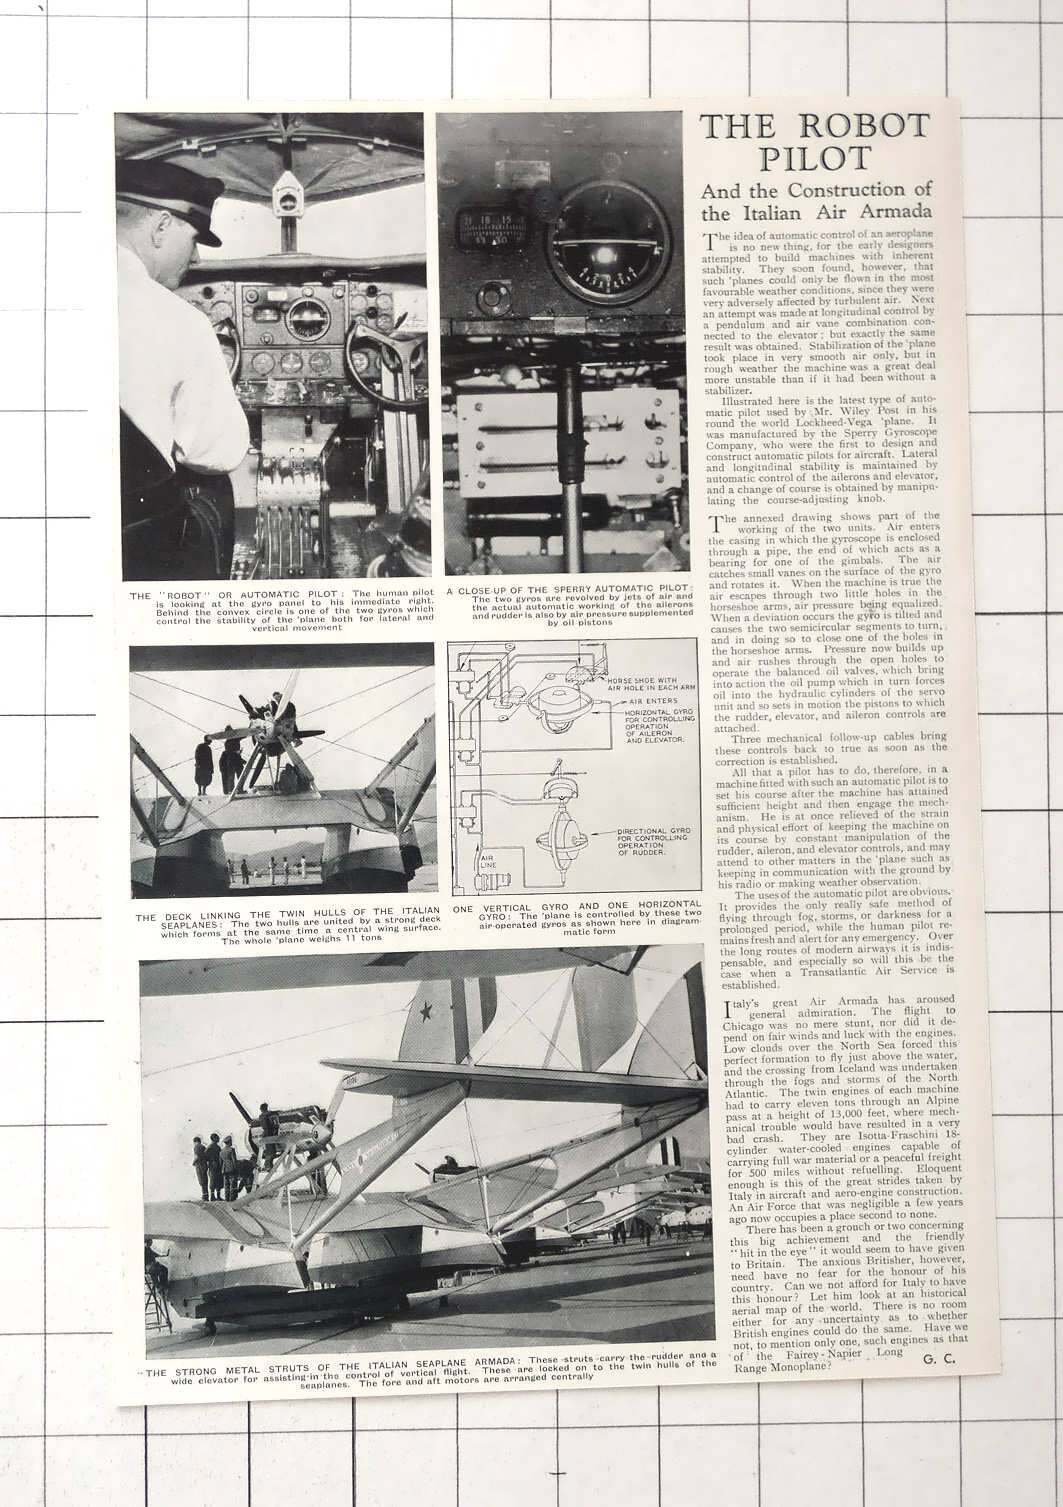 1933 The Robot Pilot And Construction Of Italian Air Armada